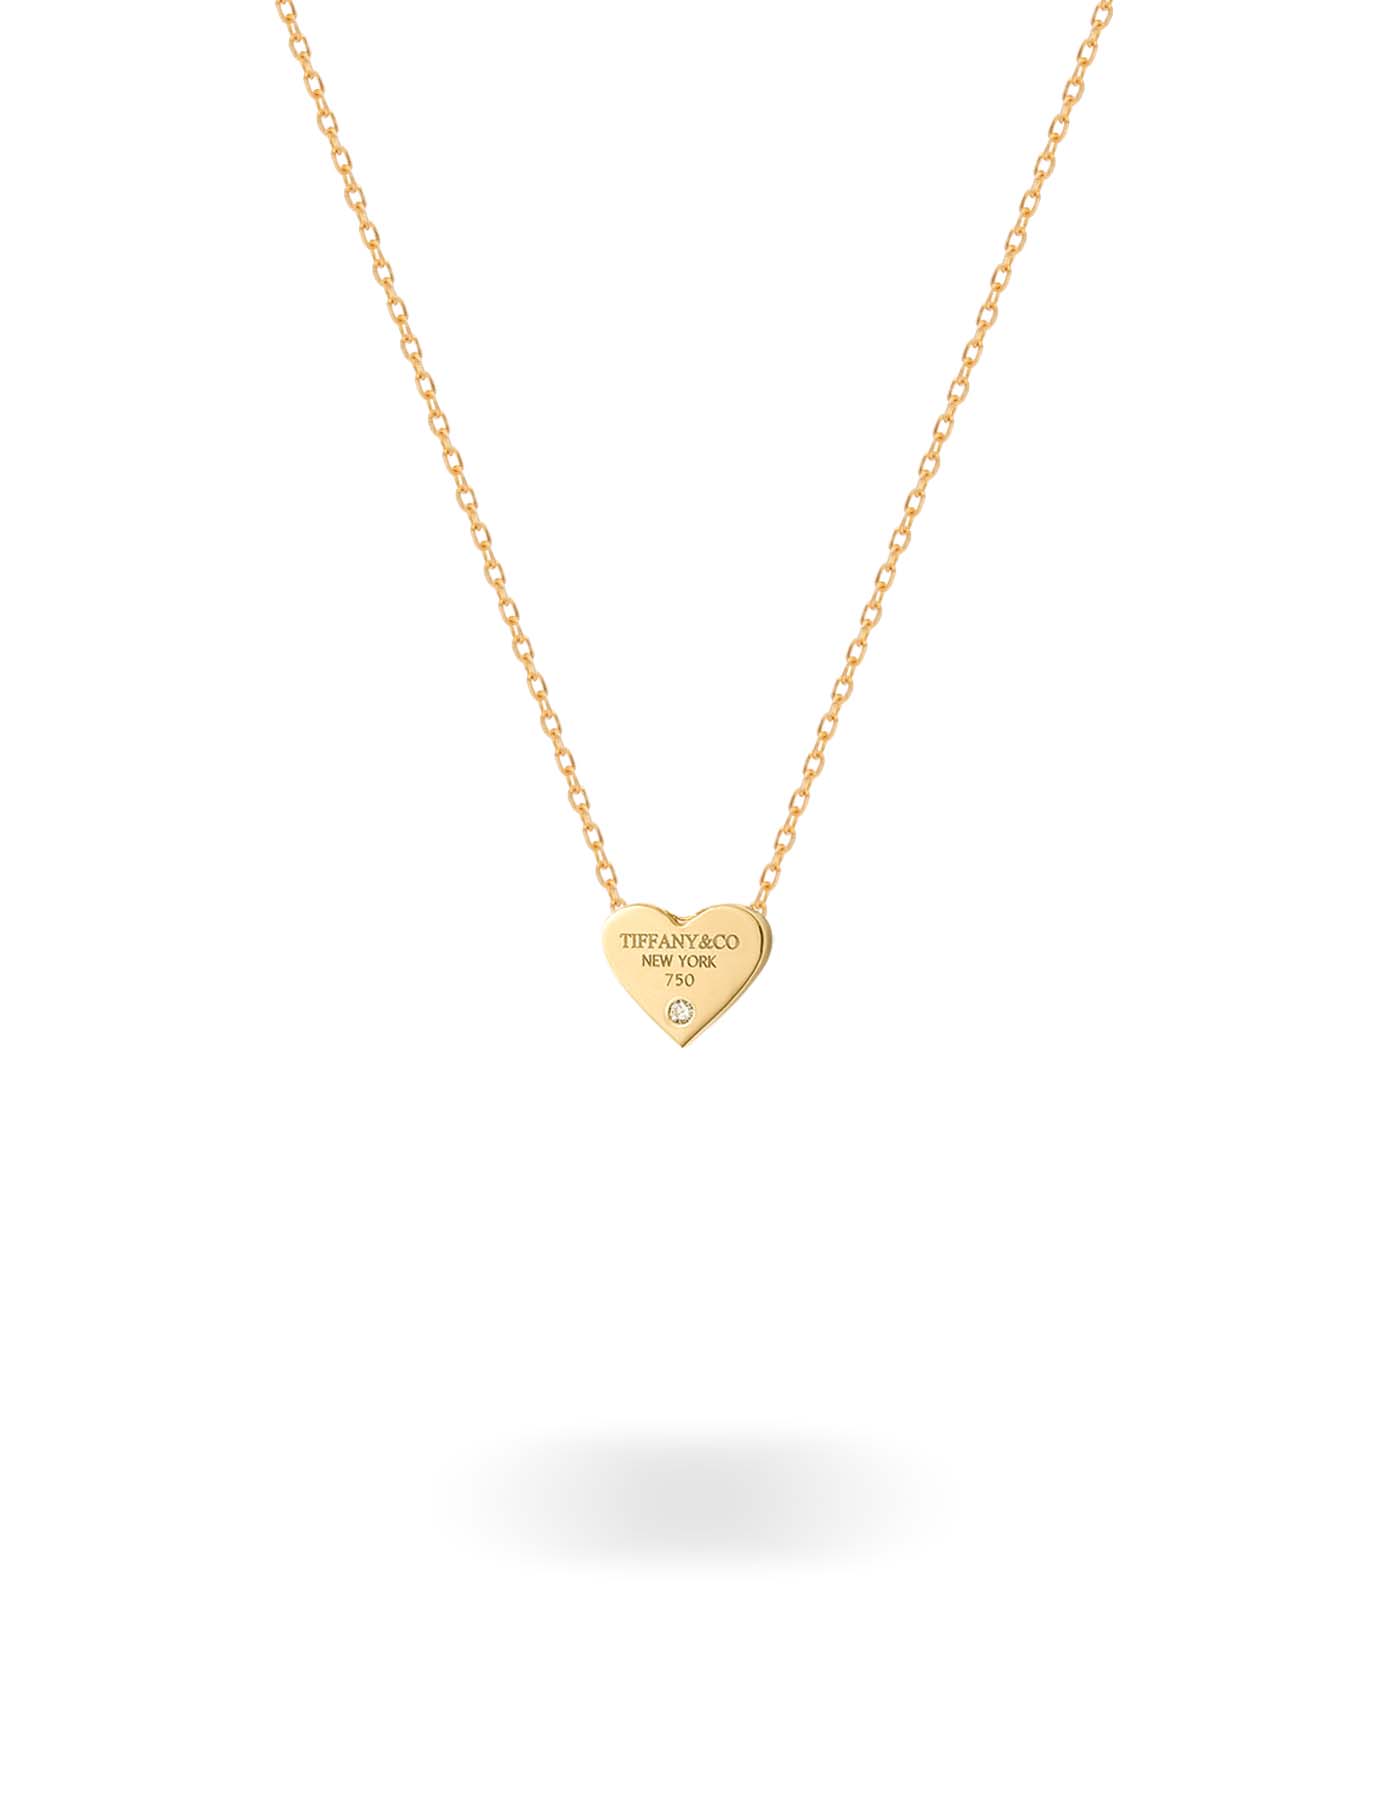 تصویر گردنبند قلب تیفانی تک نگین کوچک از کالکشن گردنبند گالری طلا ارل 